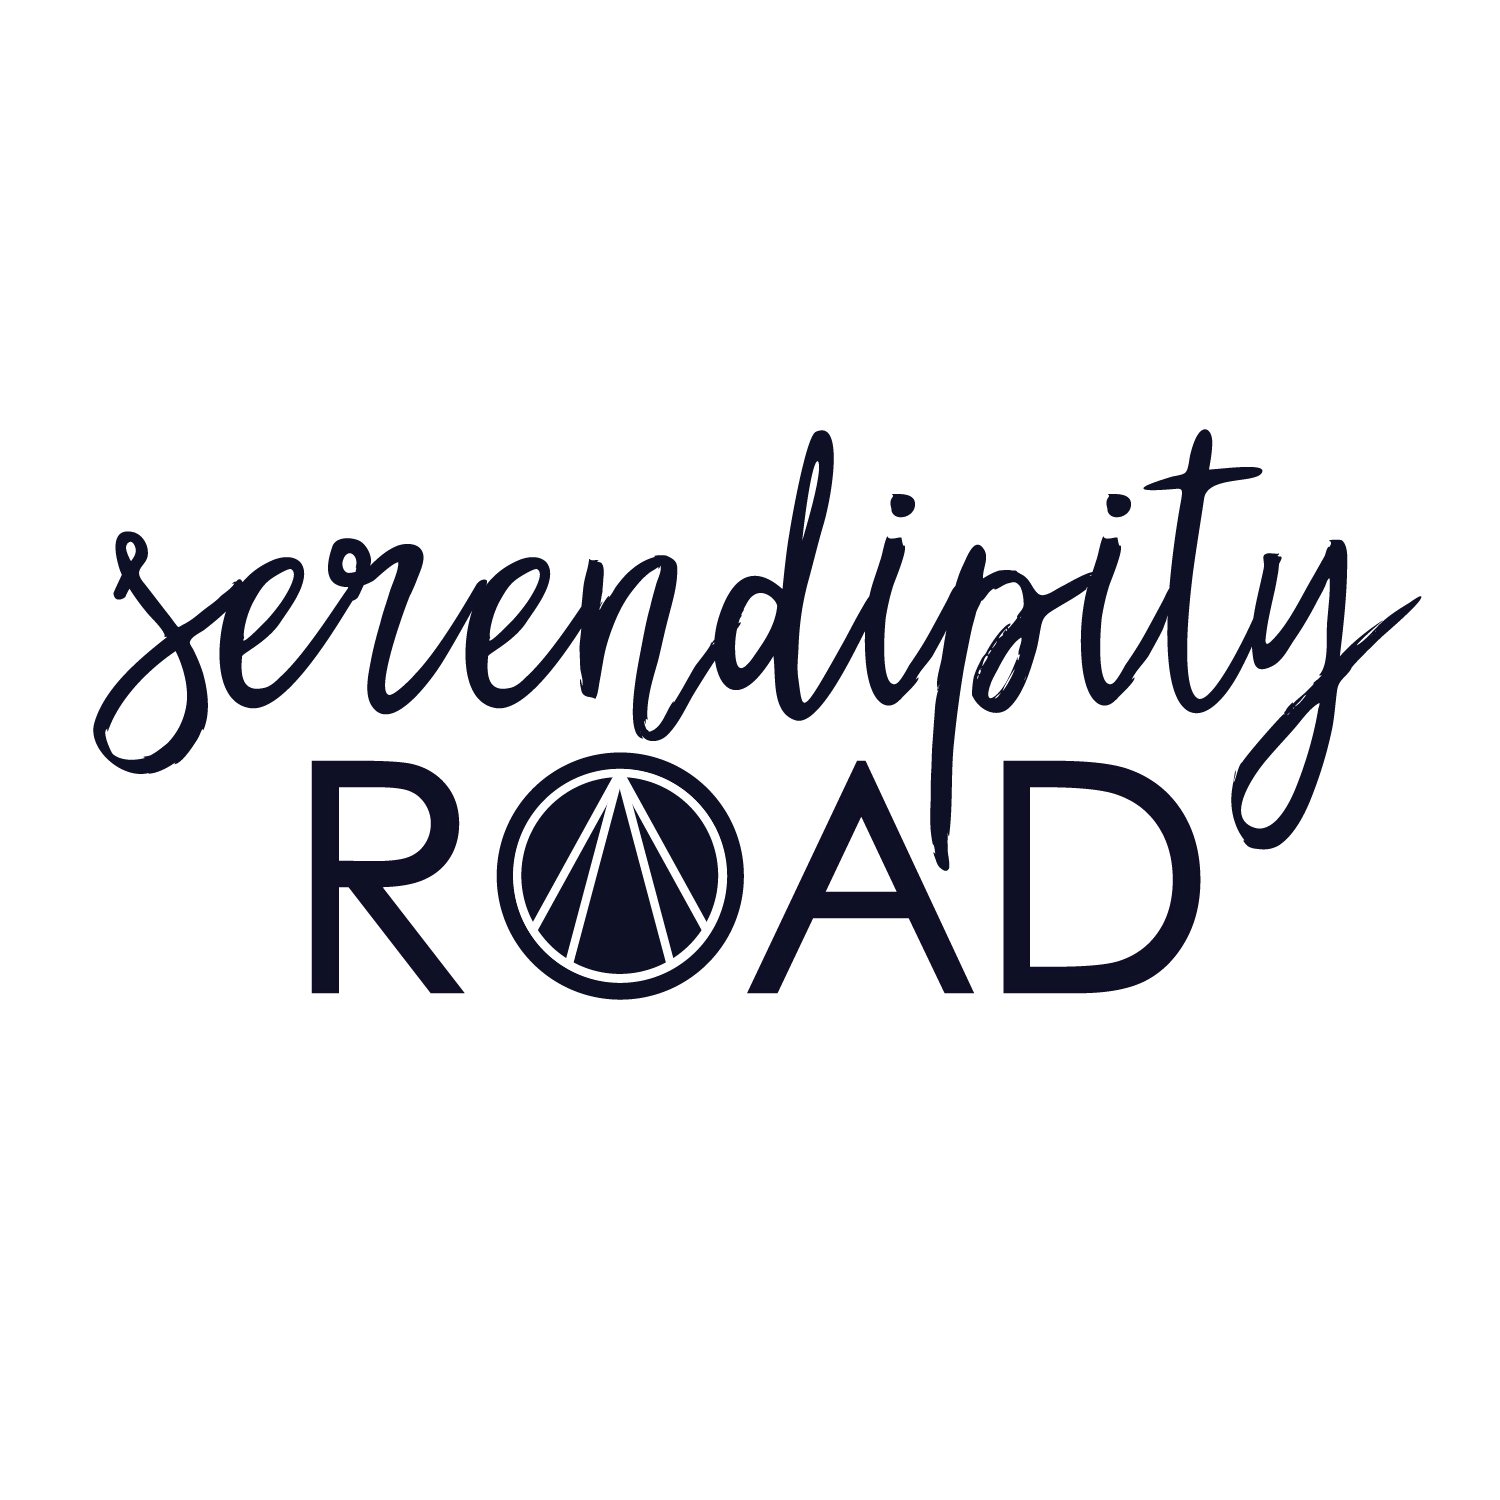 Serendipity Road (Copy)